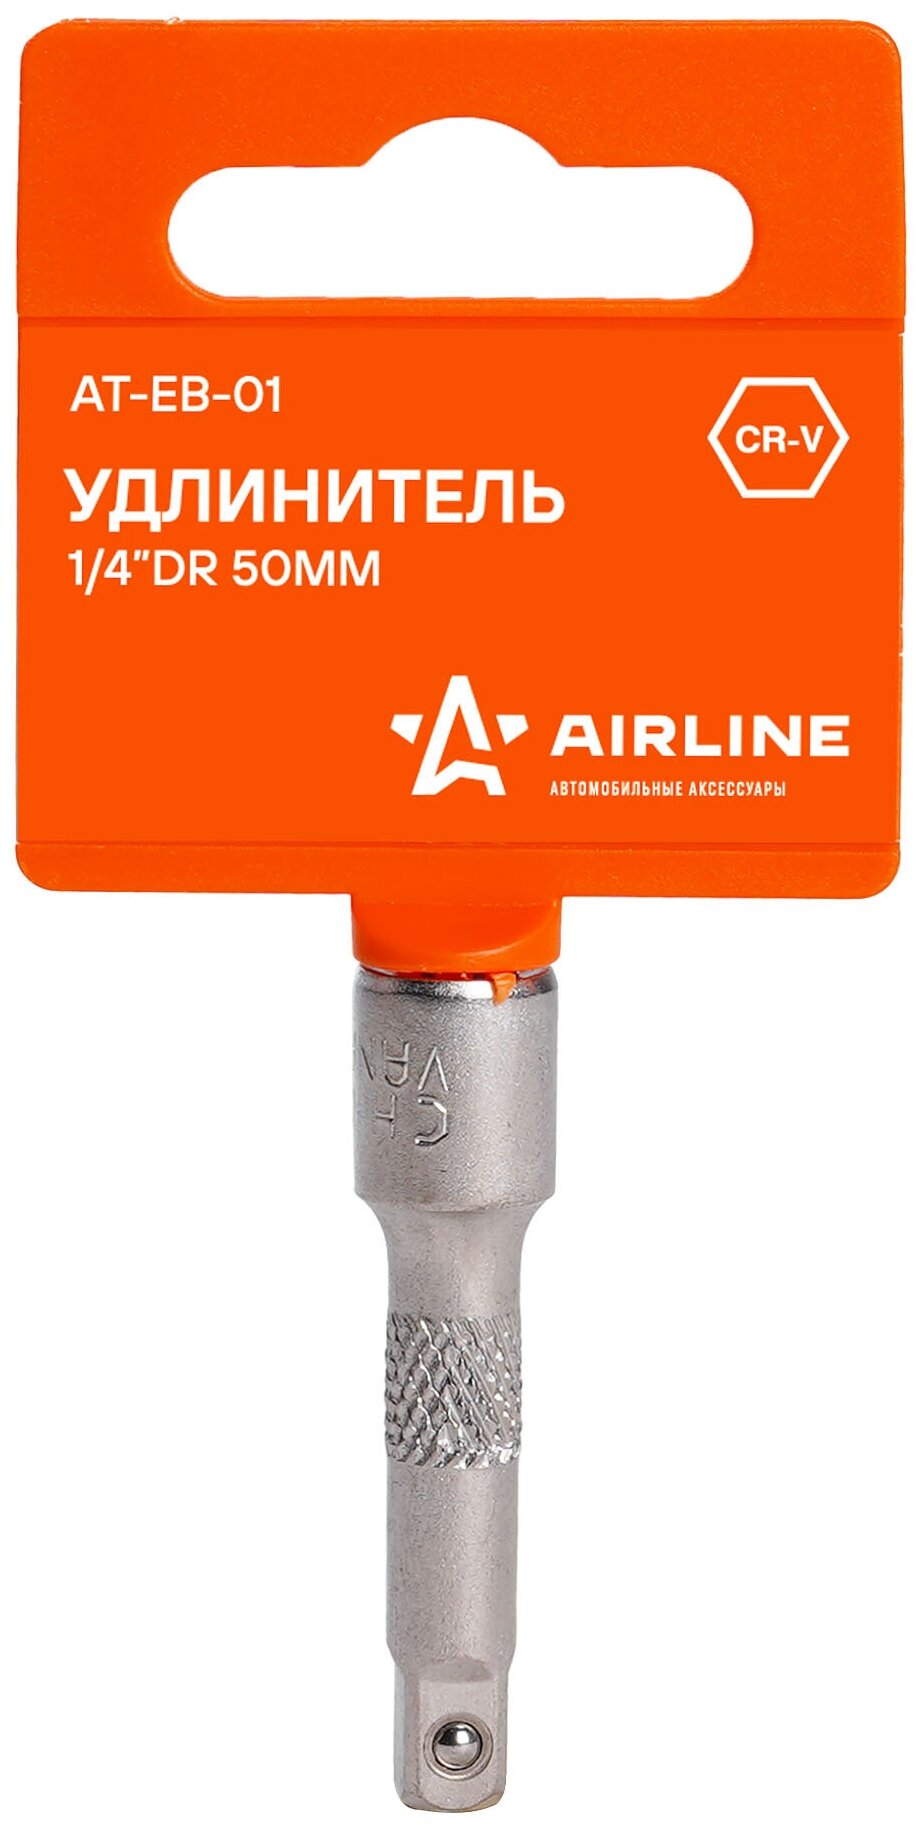 Удлинитель 1/4" DR 50мм AT-EB-01 AIRLINE